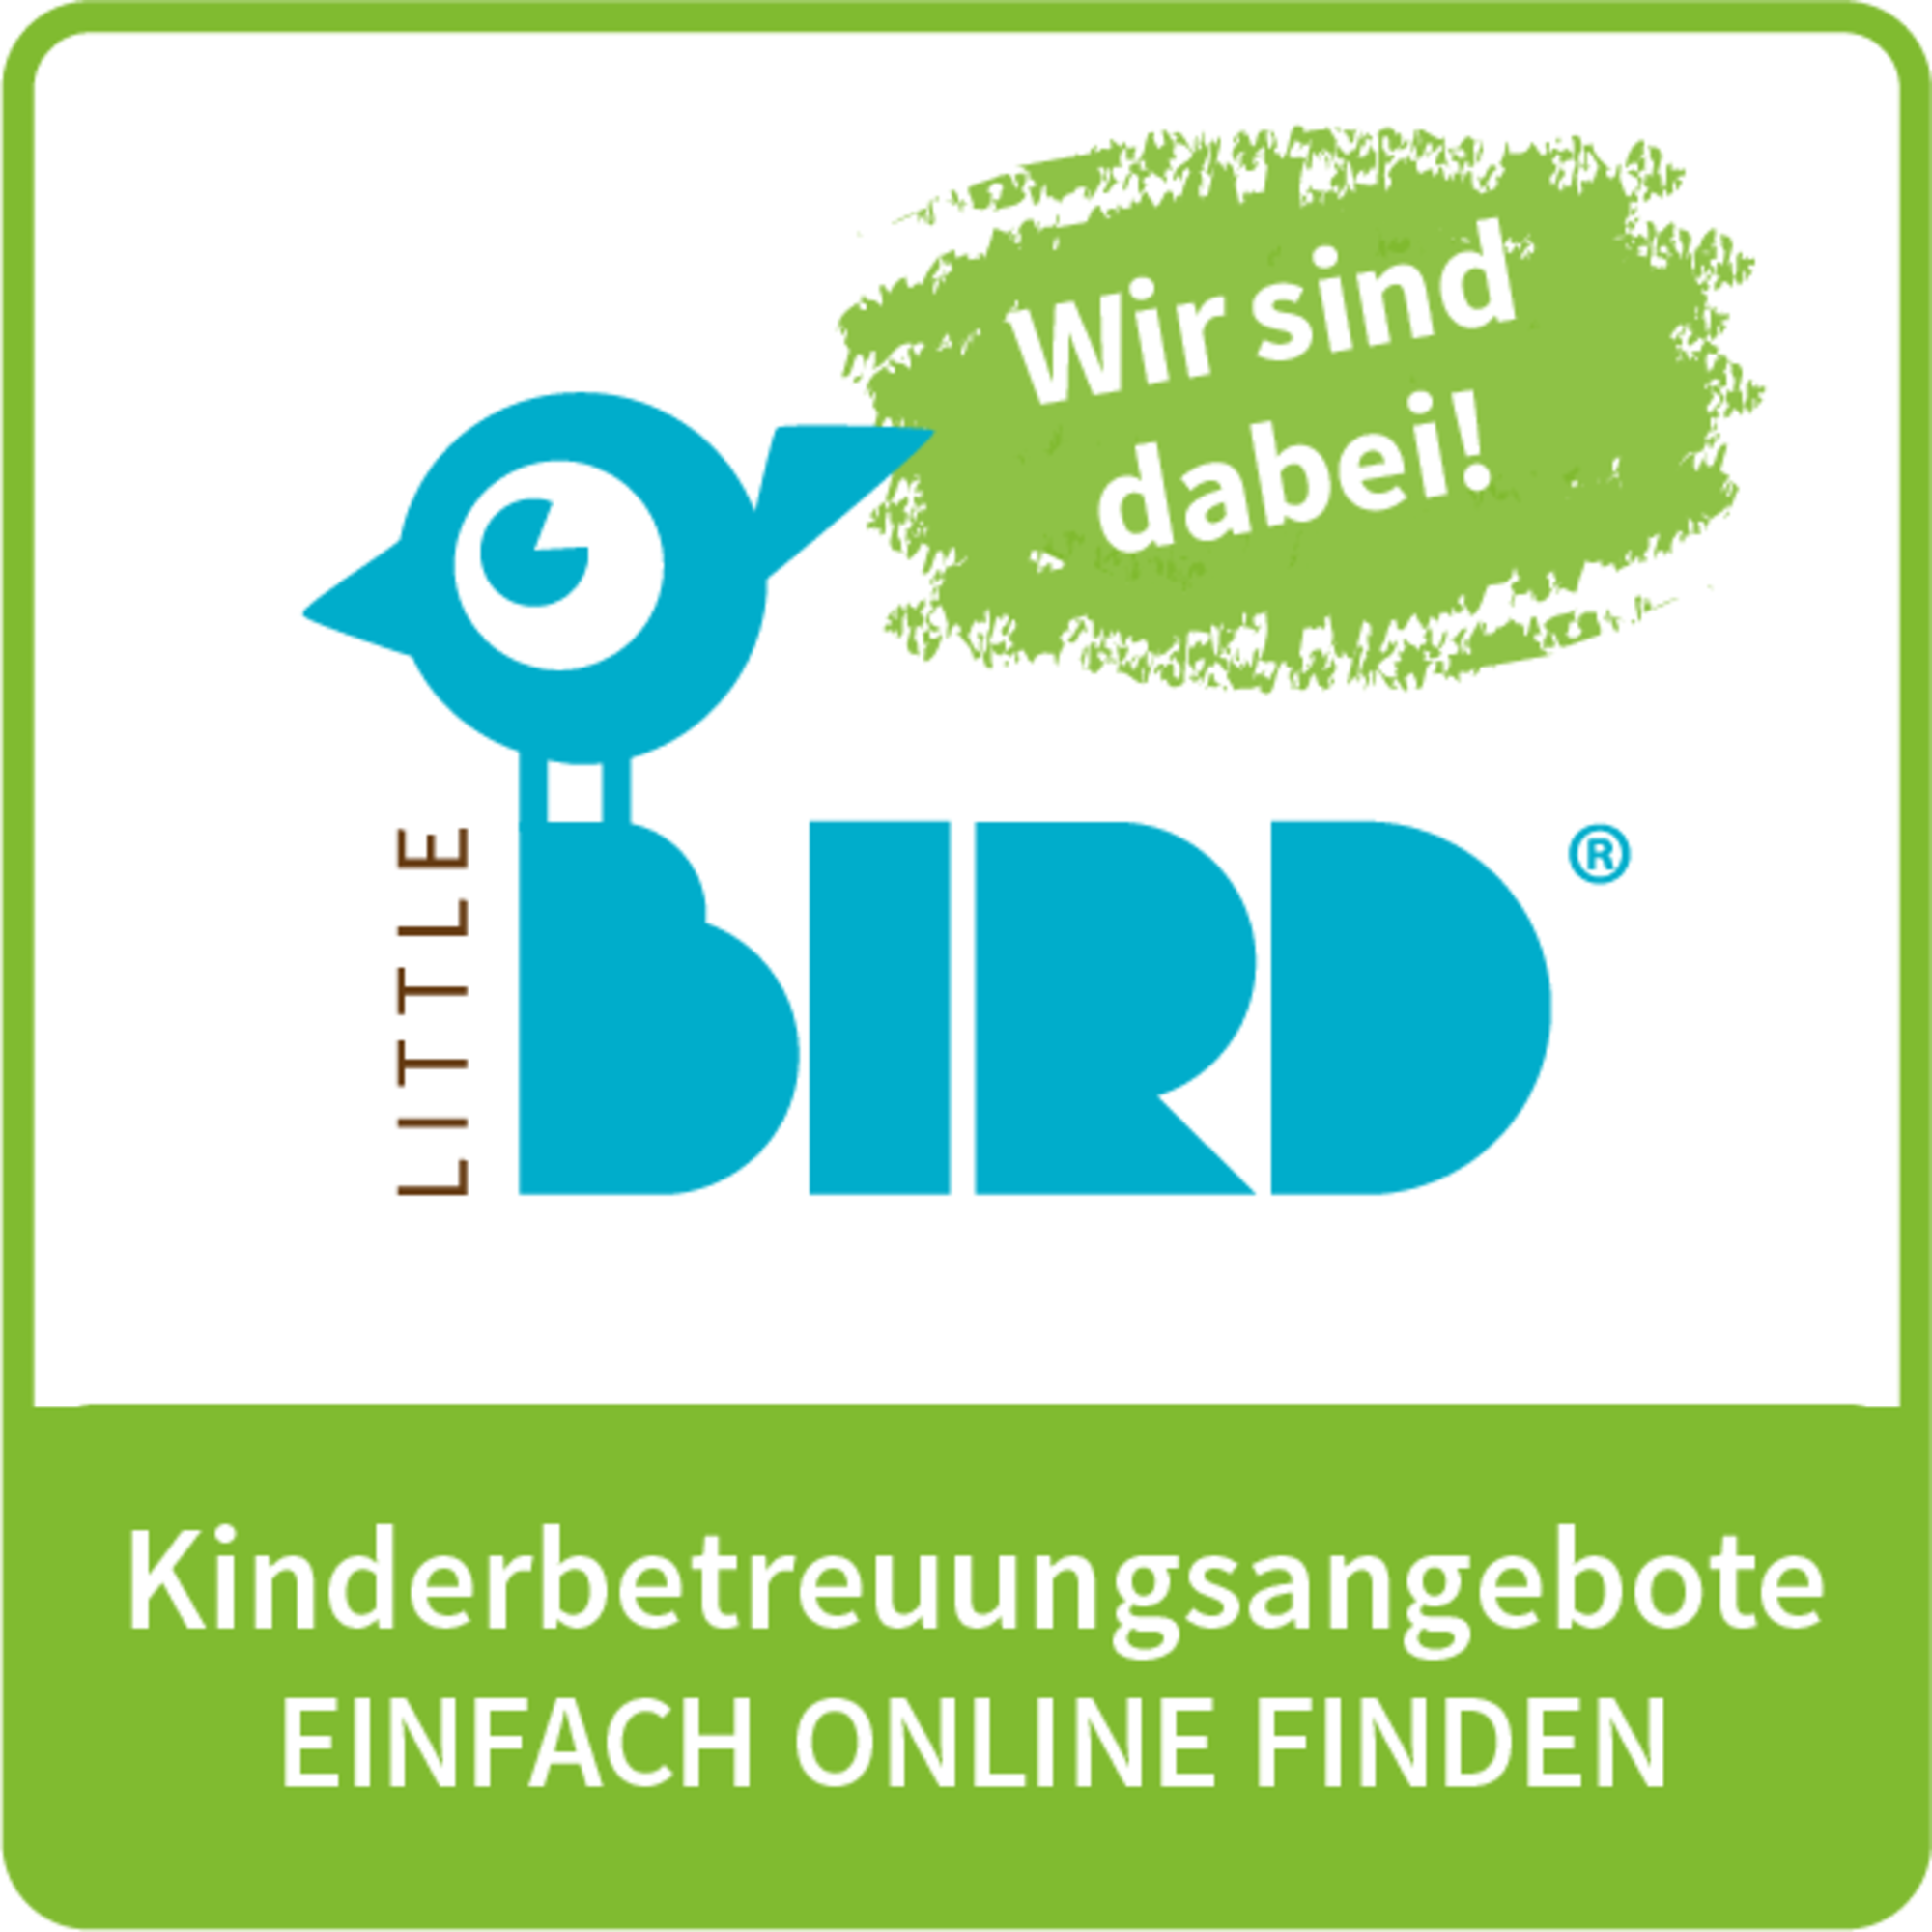 Kinderbetreuung einfach online suchen und finden mit Little Bird